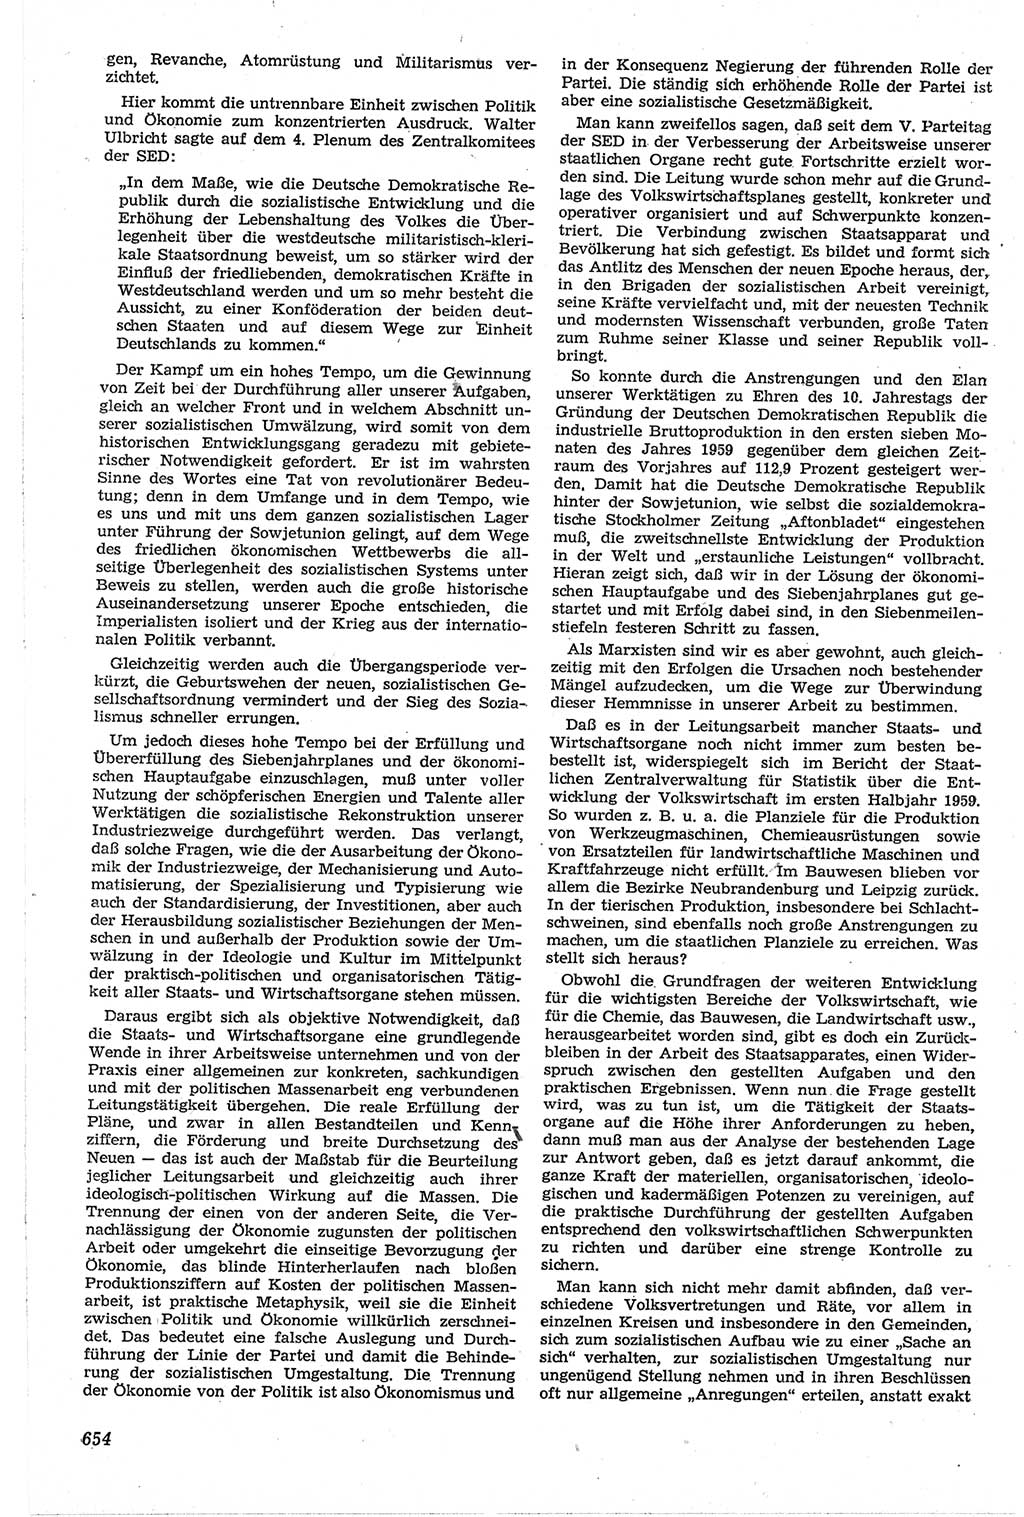 Neue Justiz (NJ), Zeitschrift für Recht und Rechtswissenschaft [Deutsche Demokratische Republik (DDR)], 13. Jahrgang 1959, Seite 654 (NJ DDR 1959, S. 654)